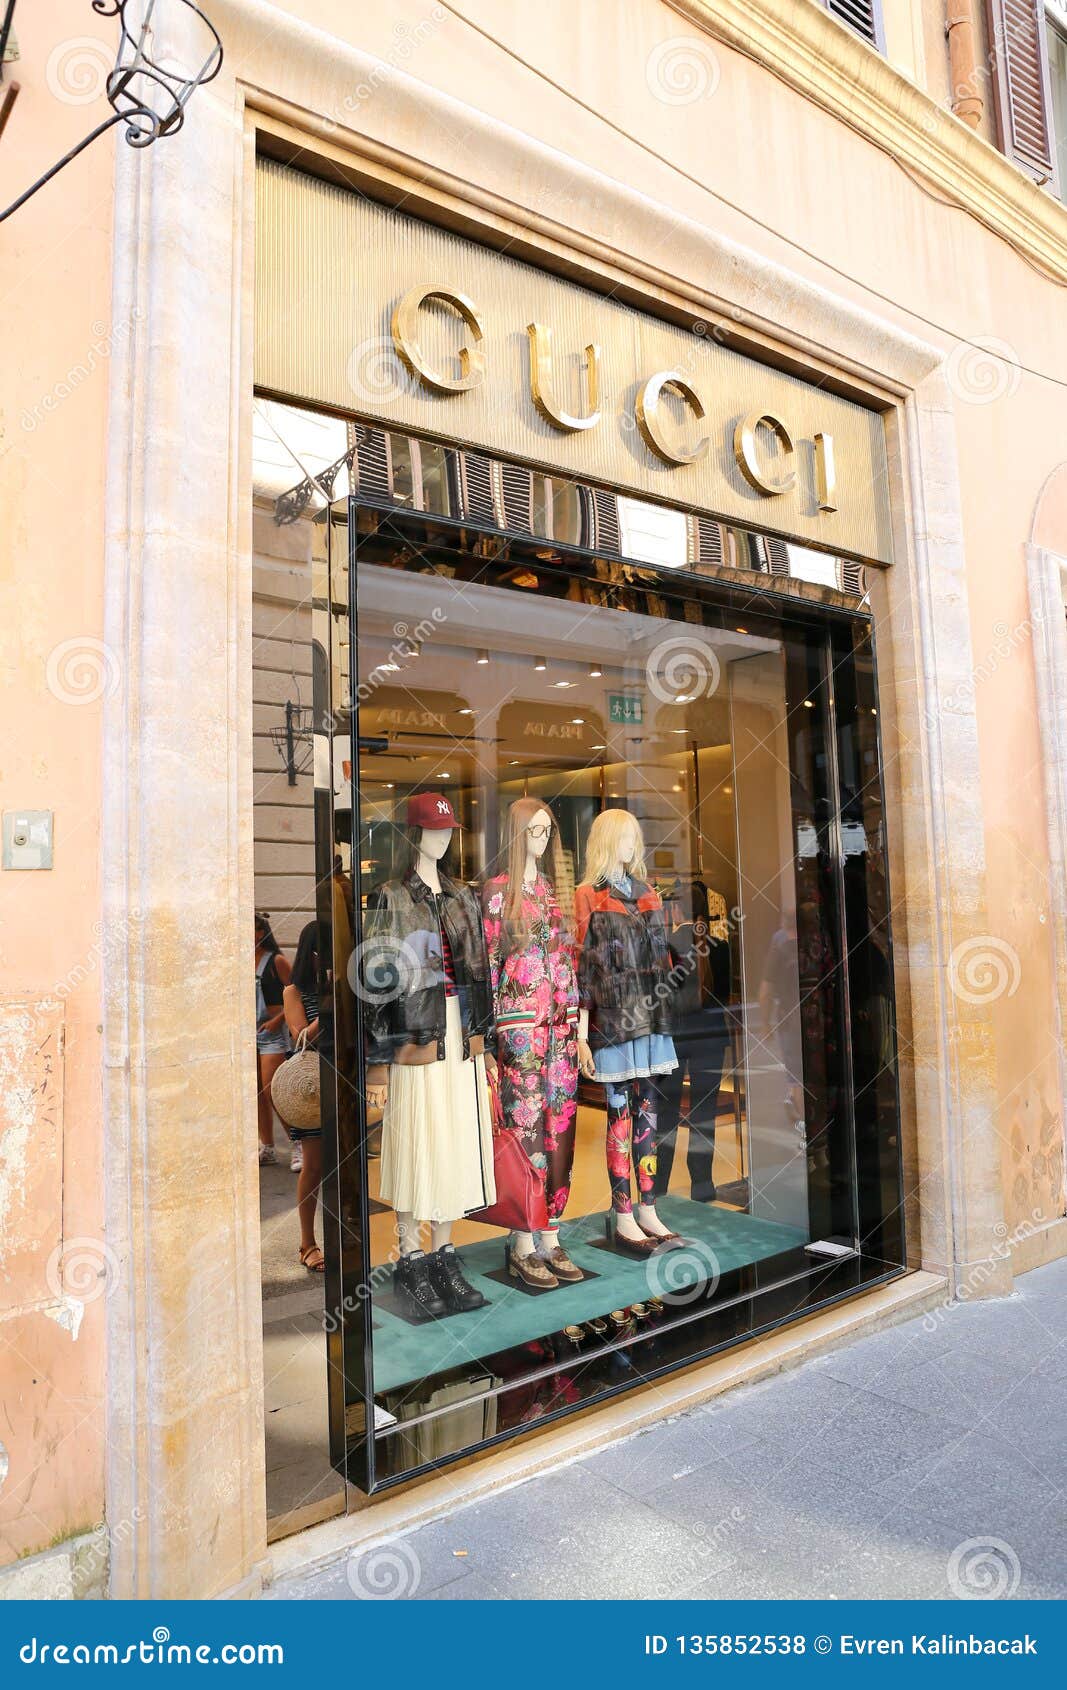 bekræft venligst tapet egetræ Gucci Store in Via Condotti, Rome, Italy Editorial Stock Photo - Image of  condotti, fashione: 135852538